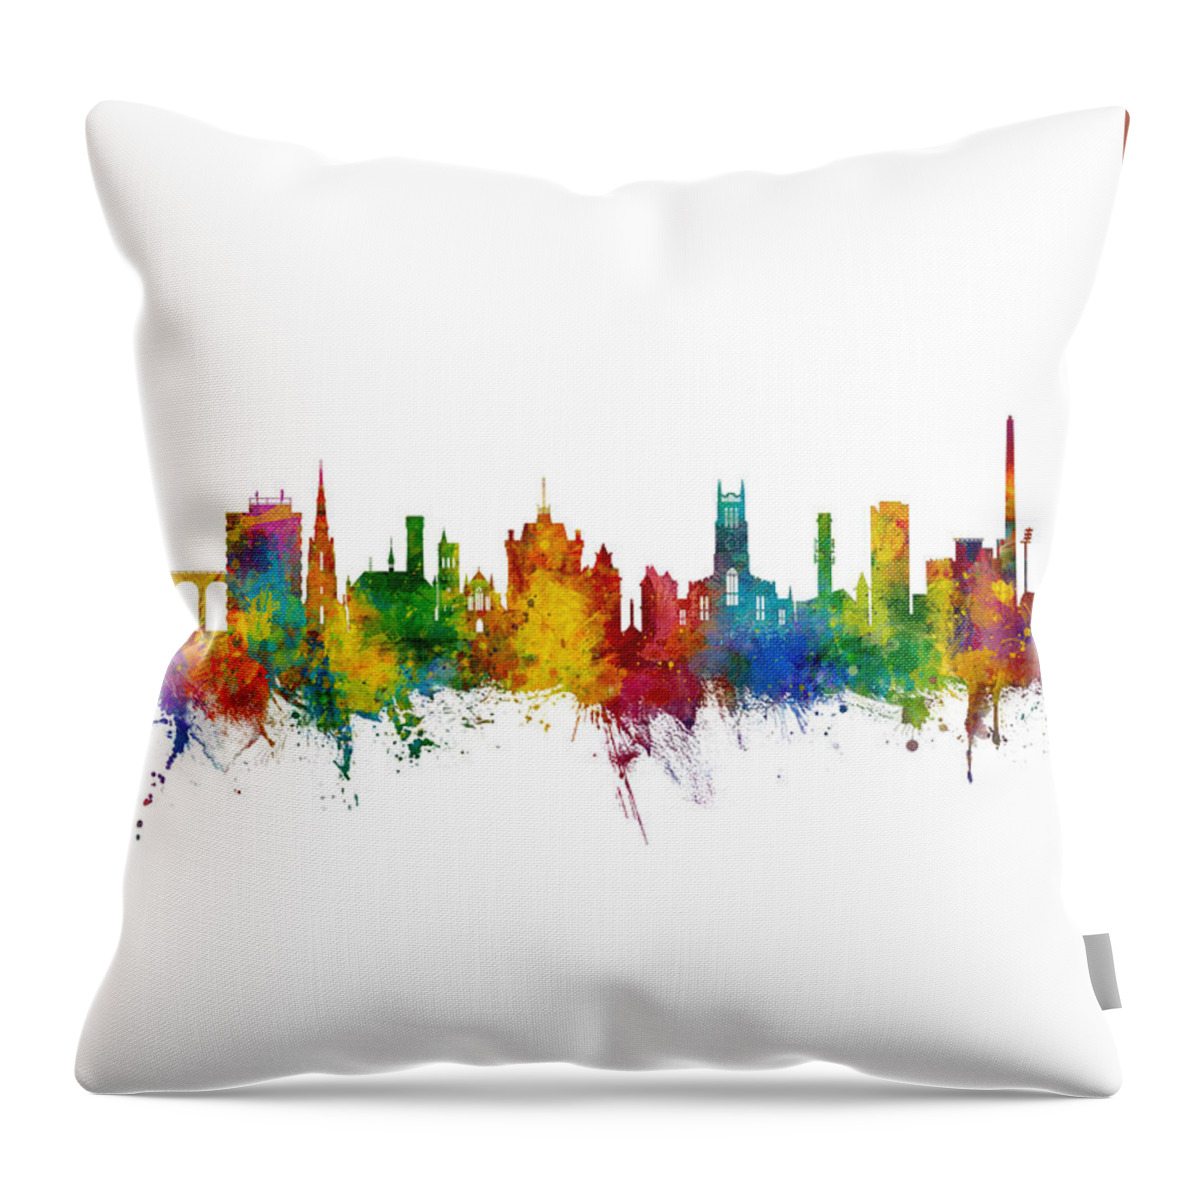 Huddersfield Throw Pillow featuring the digital art Huddersfield England Skyline #15 by Michael Tompsett